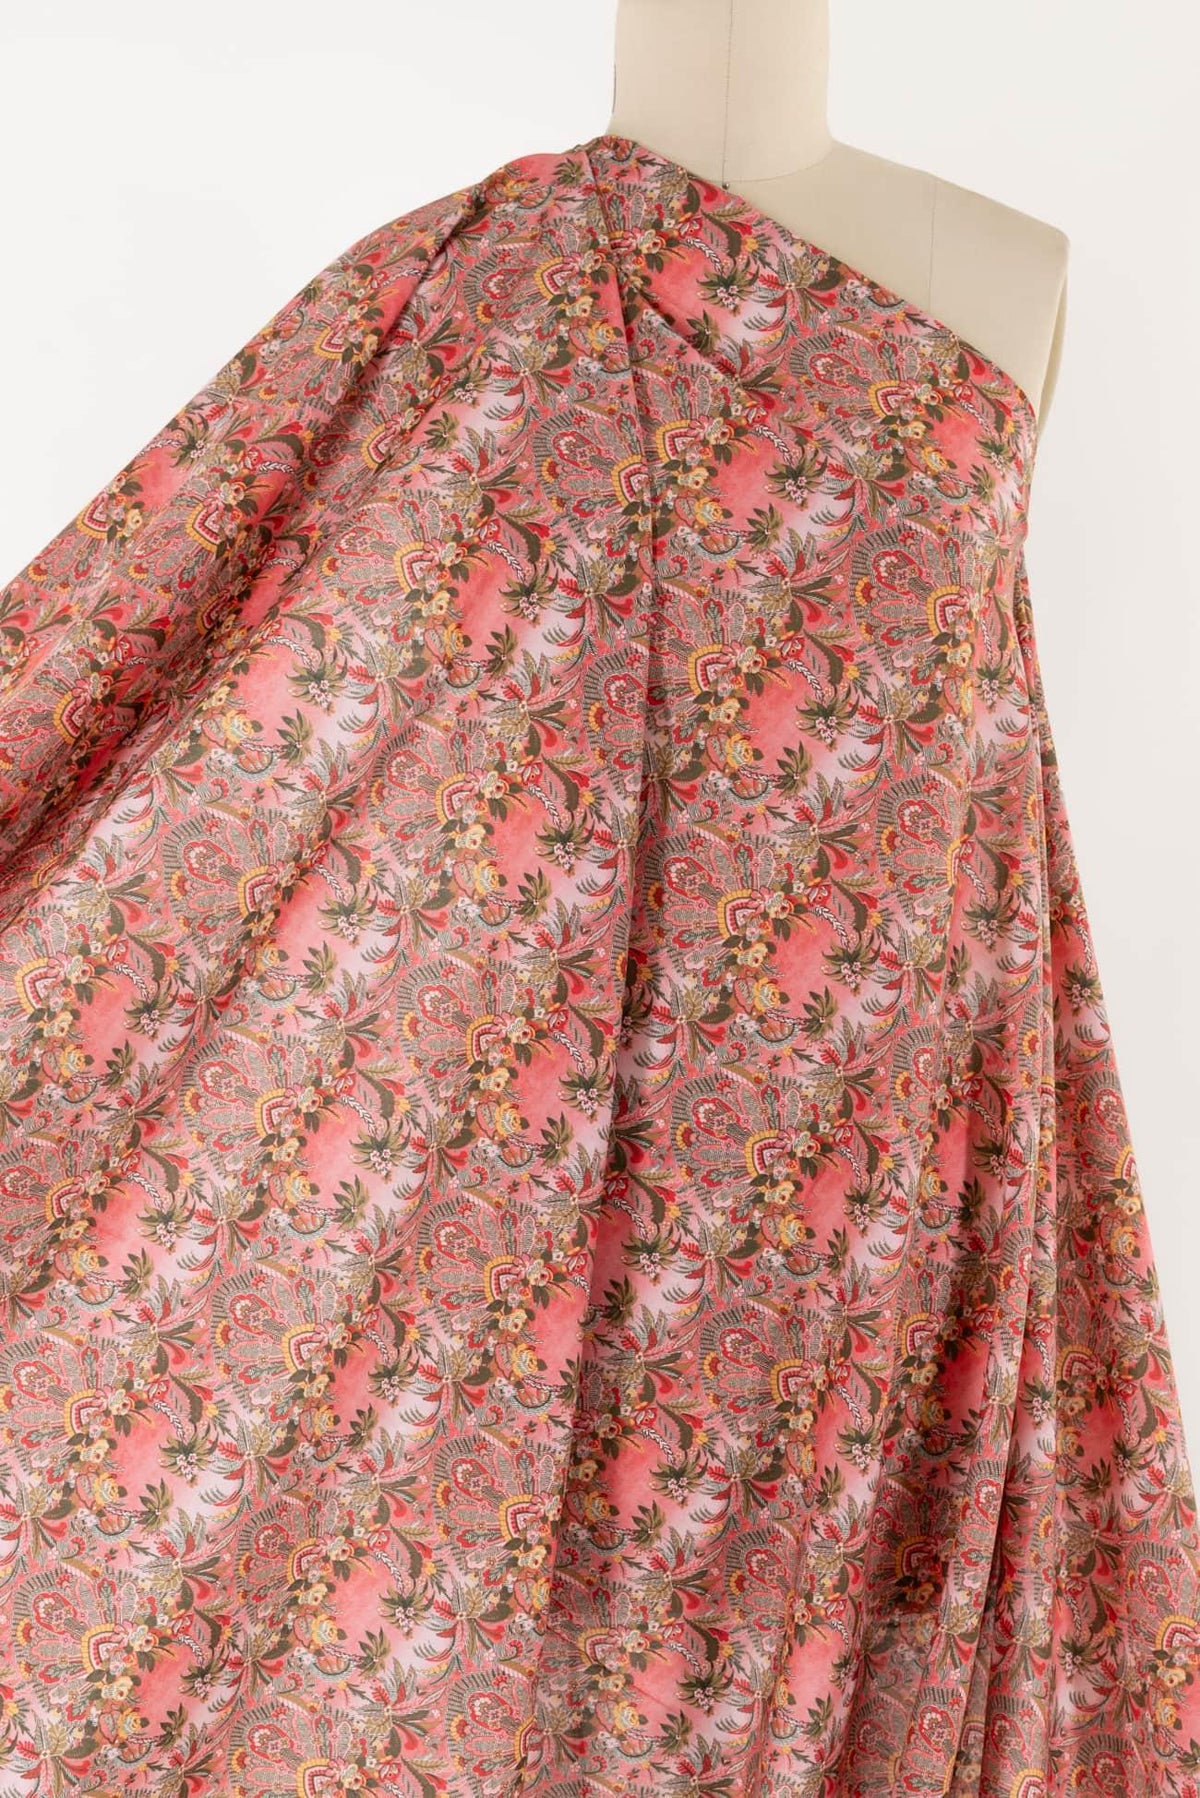 Flamingo Garden Liberty Cotton Woven - Marcy Tilton Fabrics